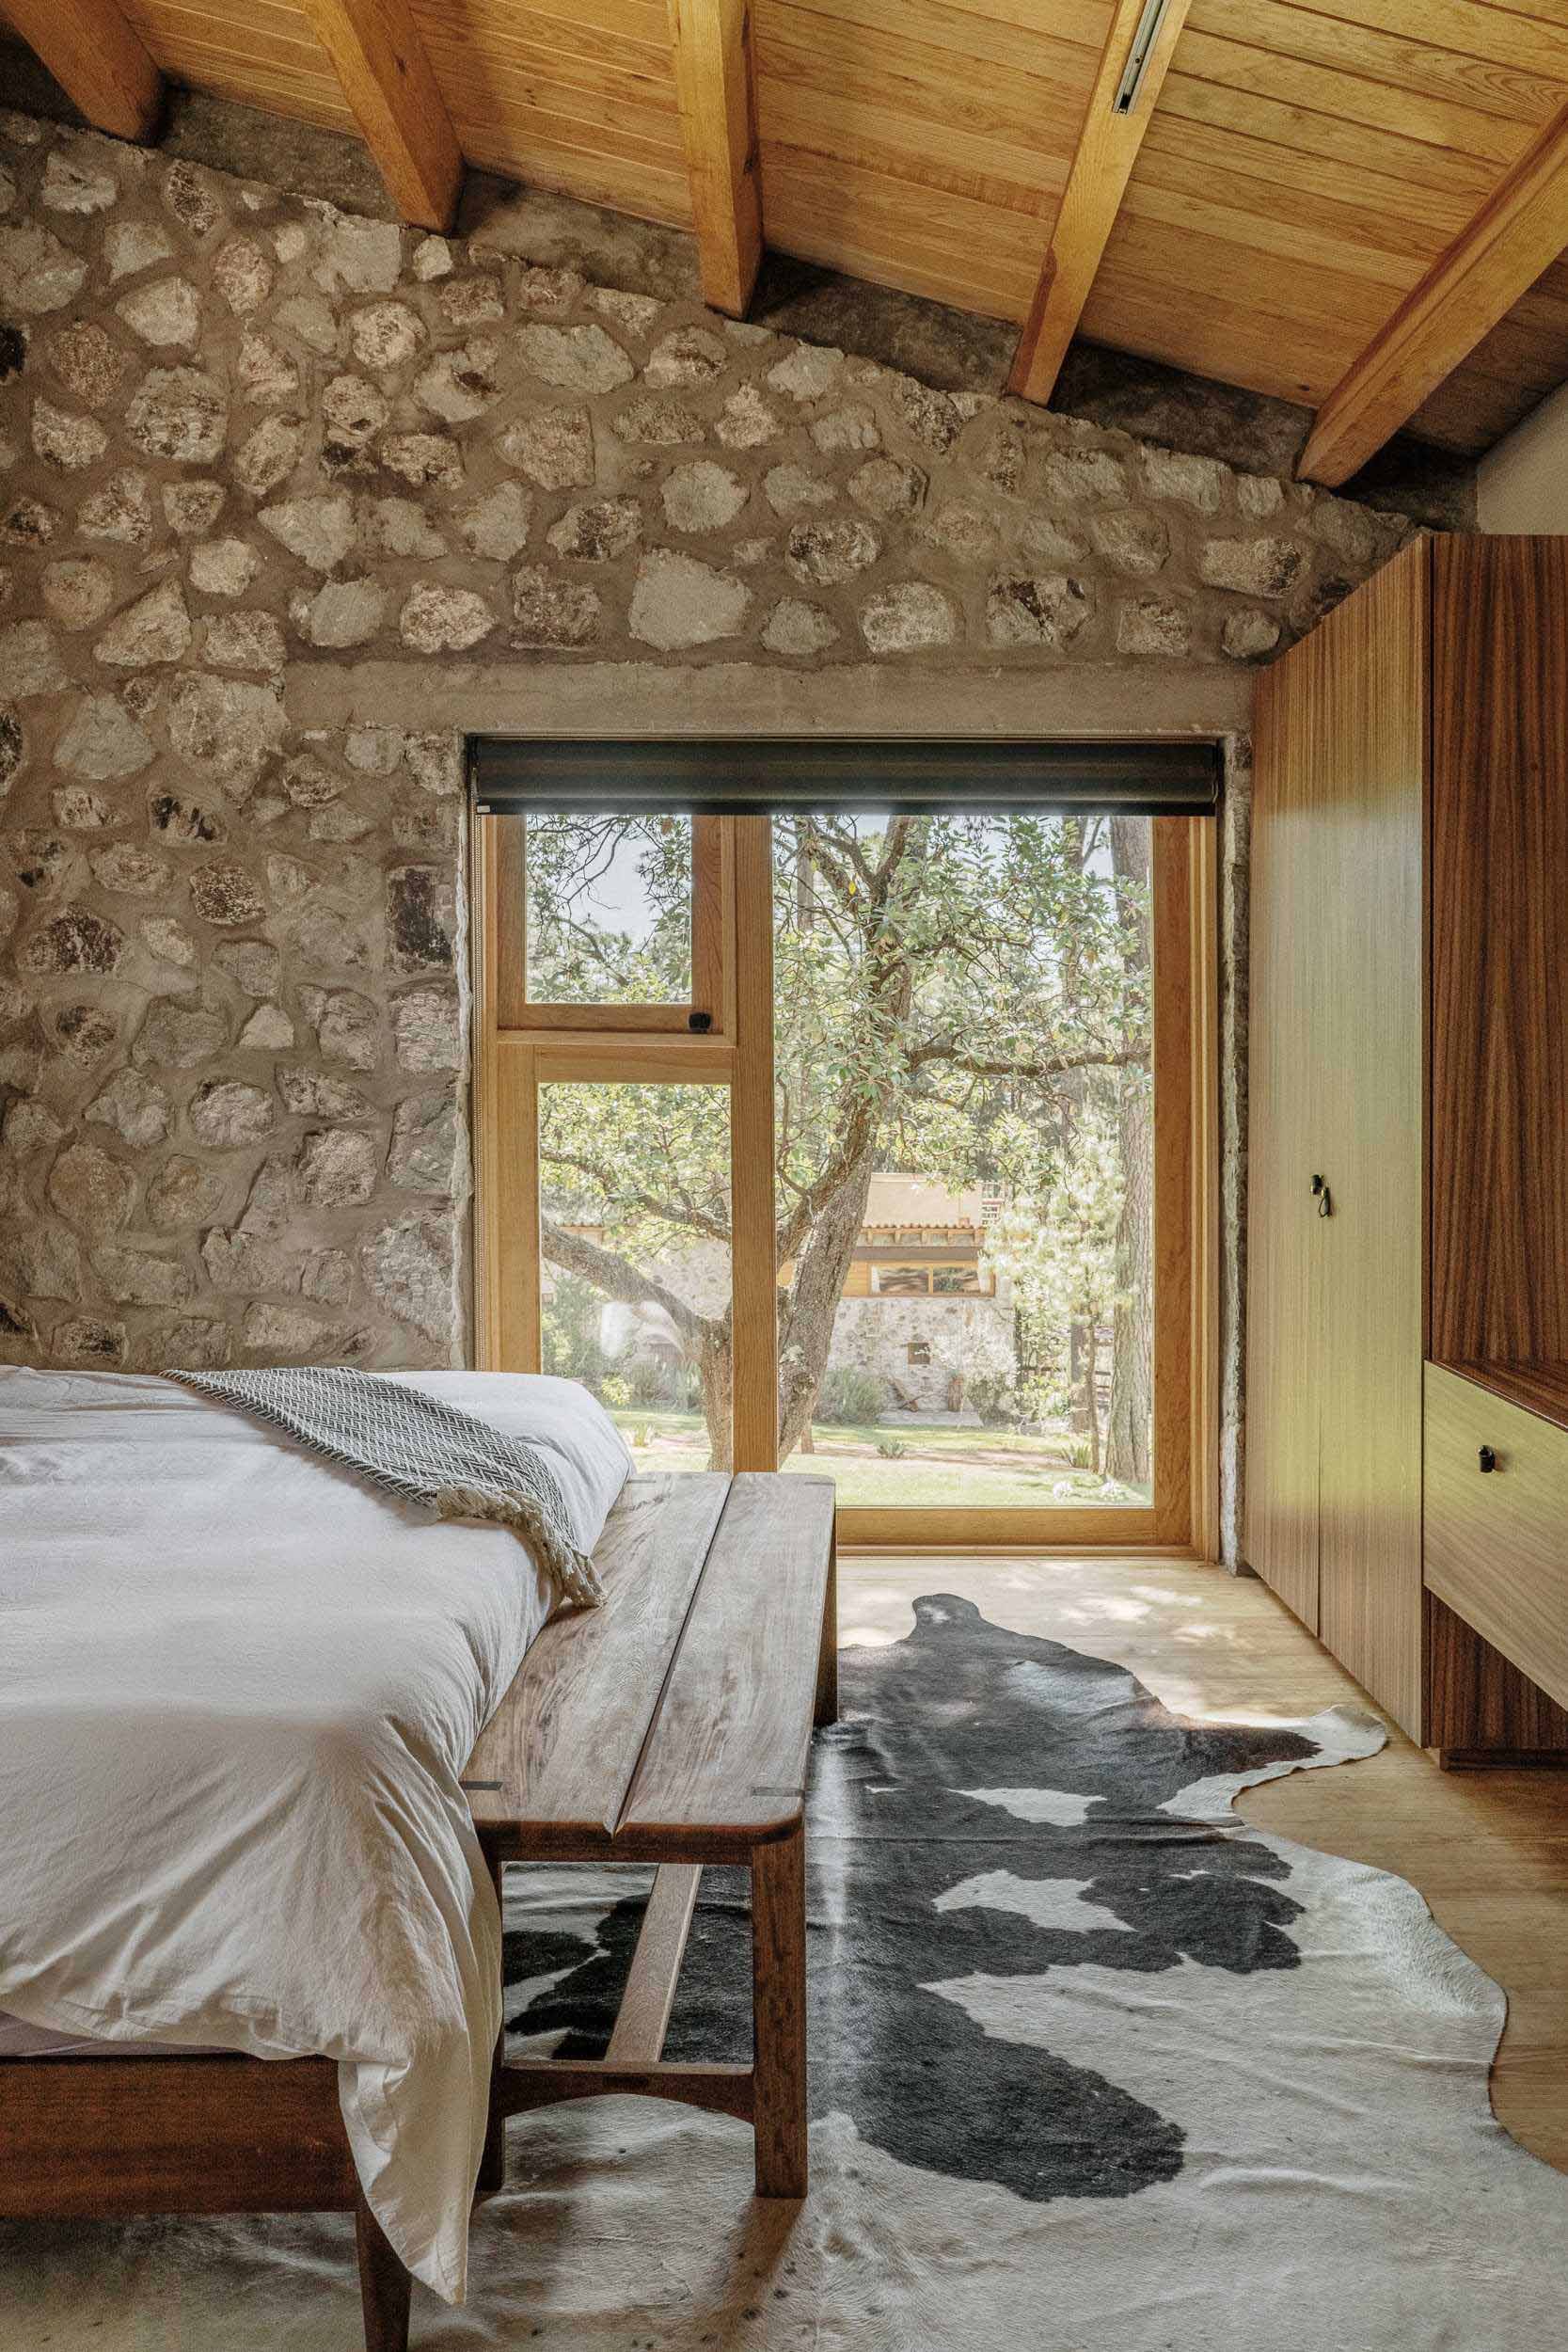 یک اتاق خواب مدرن از سنگ و چوب با منظره بالای درخت.